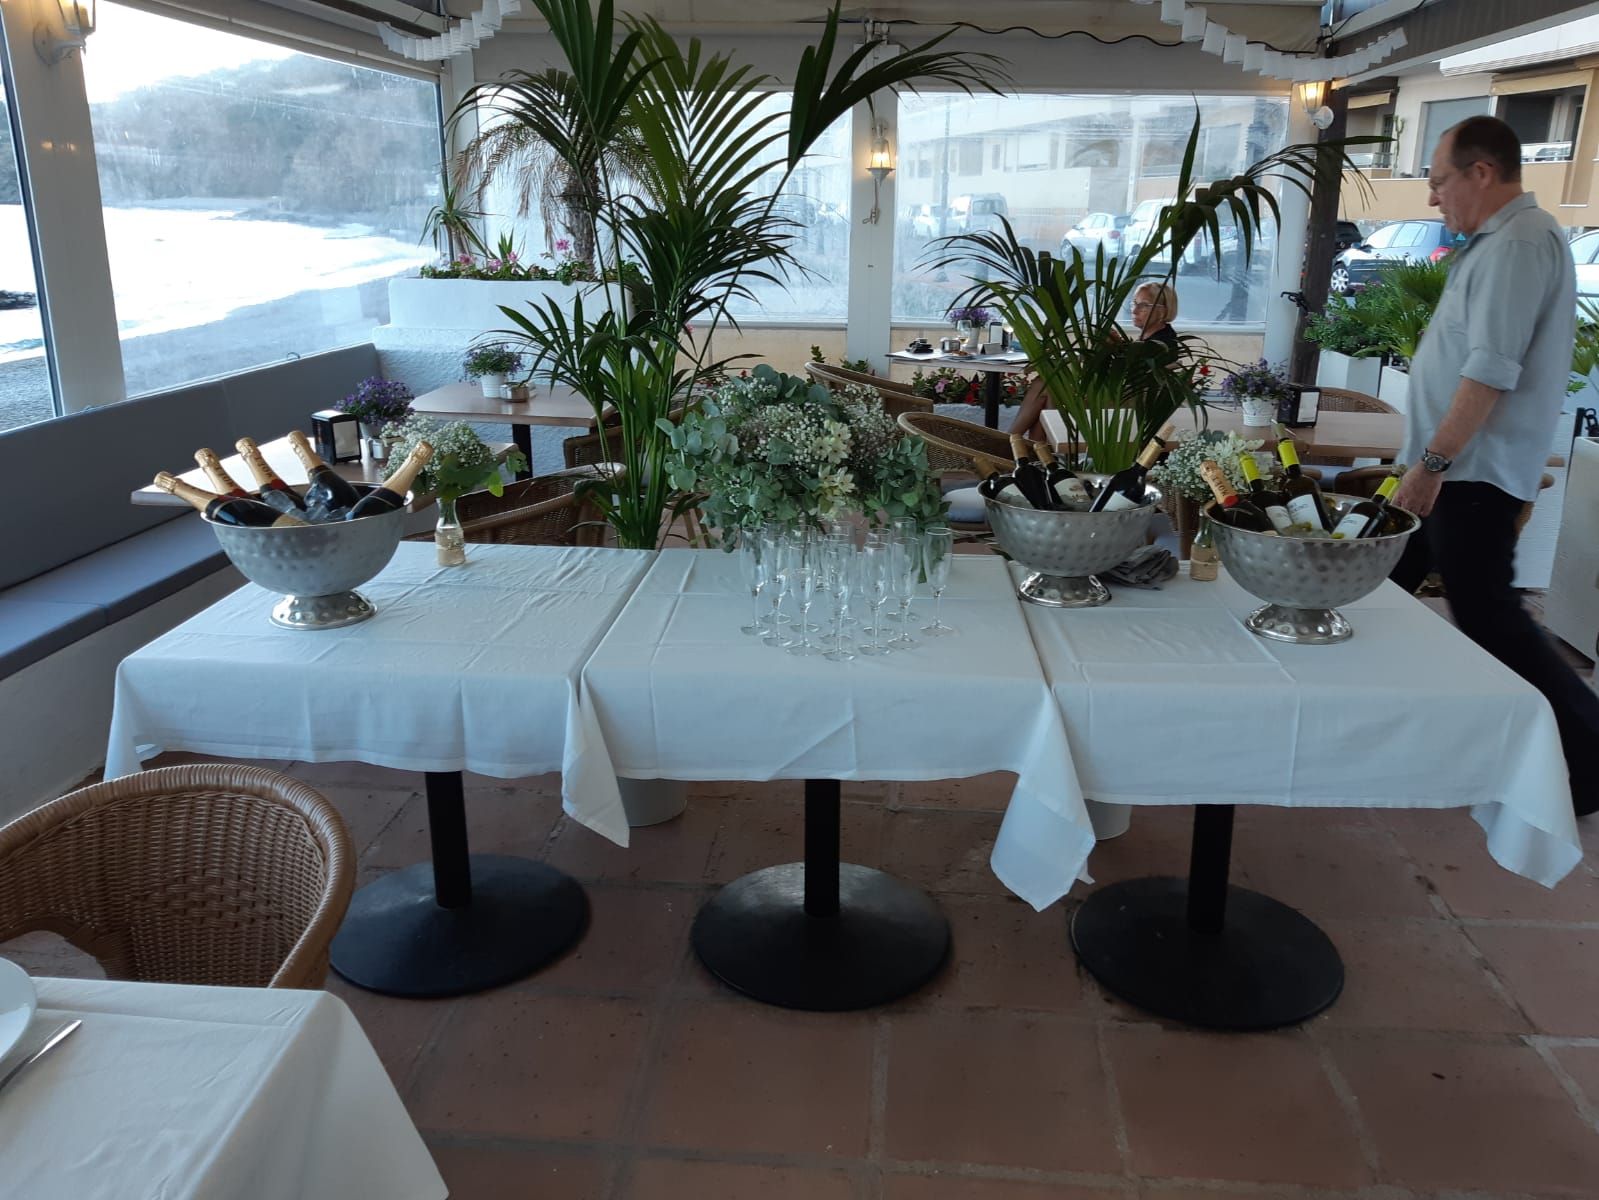 Foto 19 de Restaurante de cocina mediterránea en  | El Balcón de Cotobro